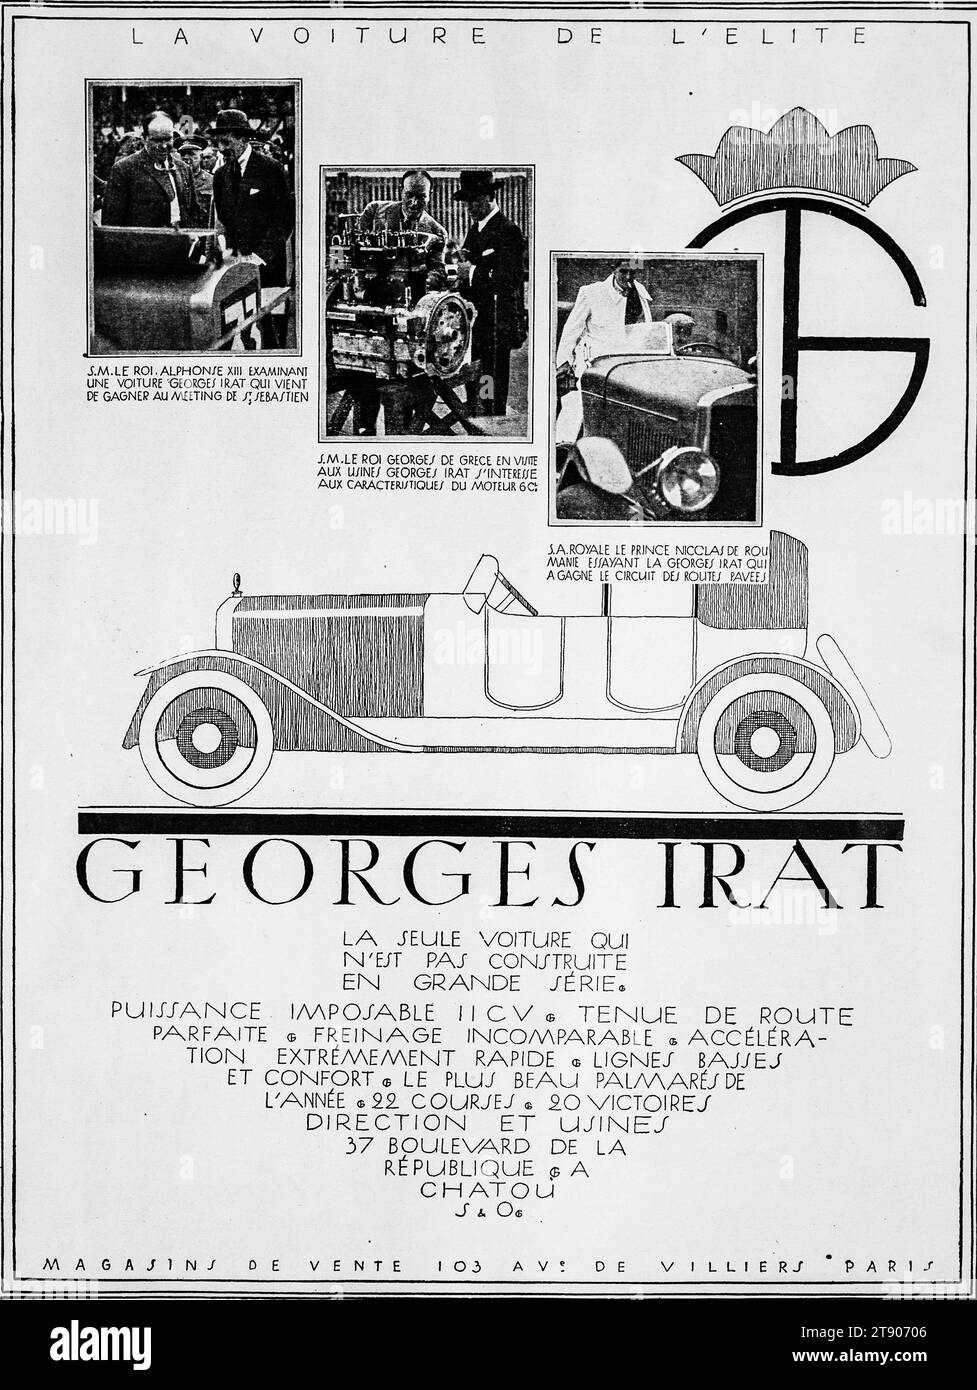 Eine Werbung aus den 1920er Jahren für das Elite-Automobil Georges Irat mit Schwarz-weiß-Bildern und Illustrationen. Stockfoto